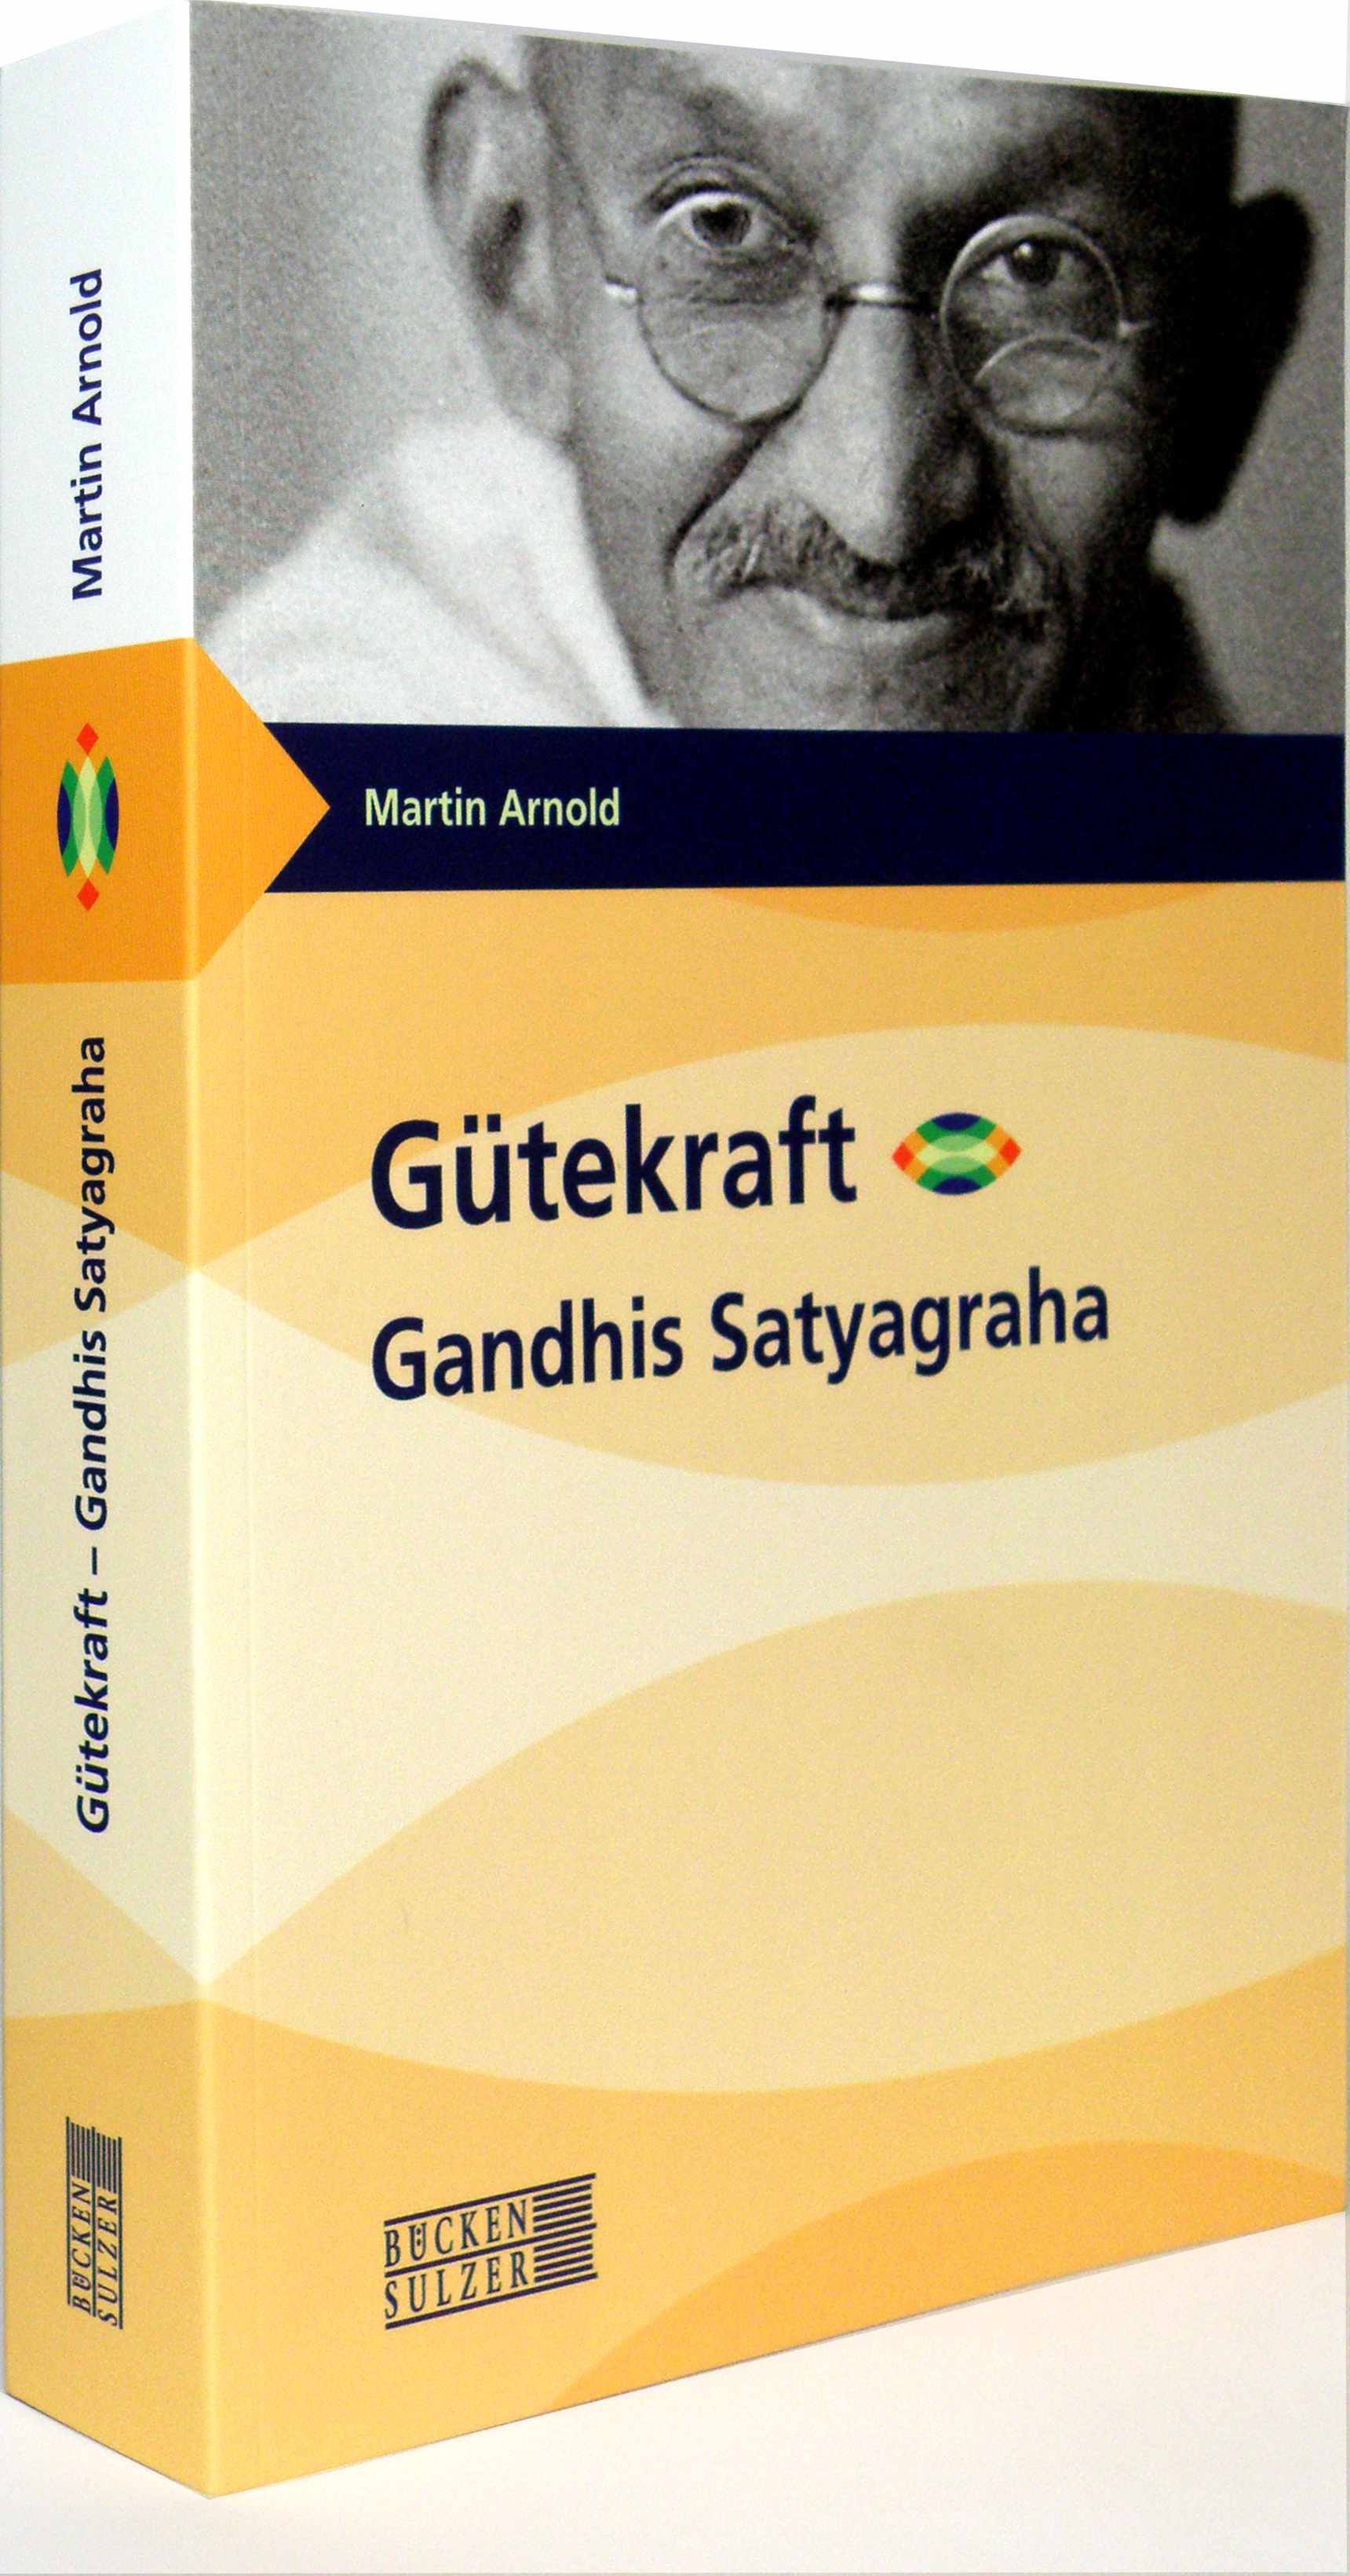 Bild des Buches über Gandhis Gütekraft-Konzept